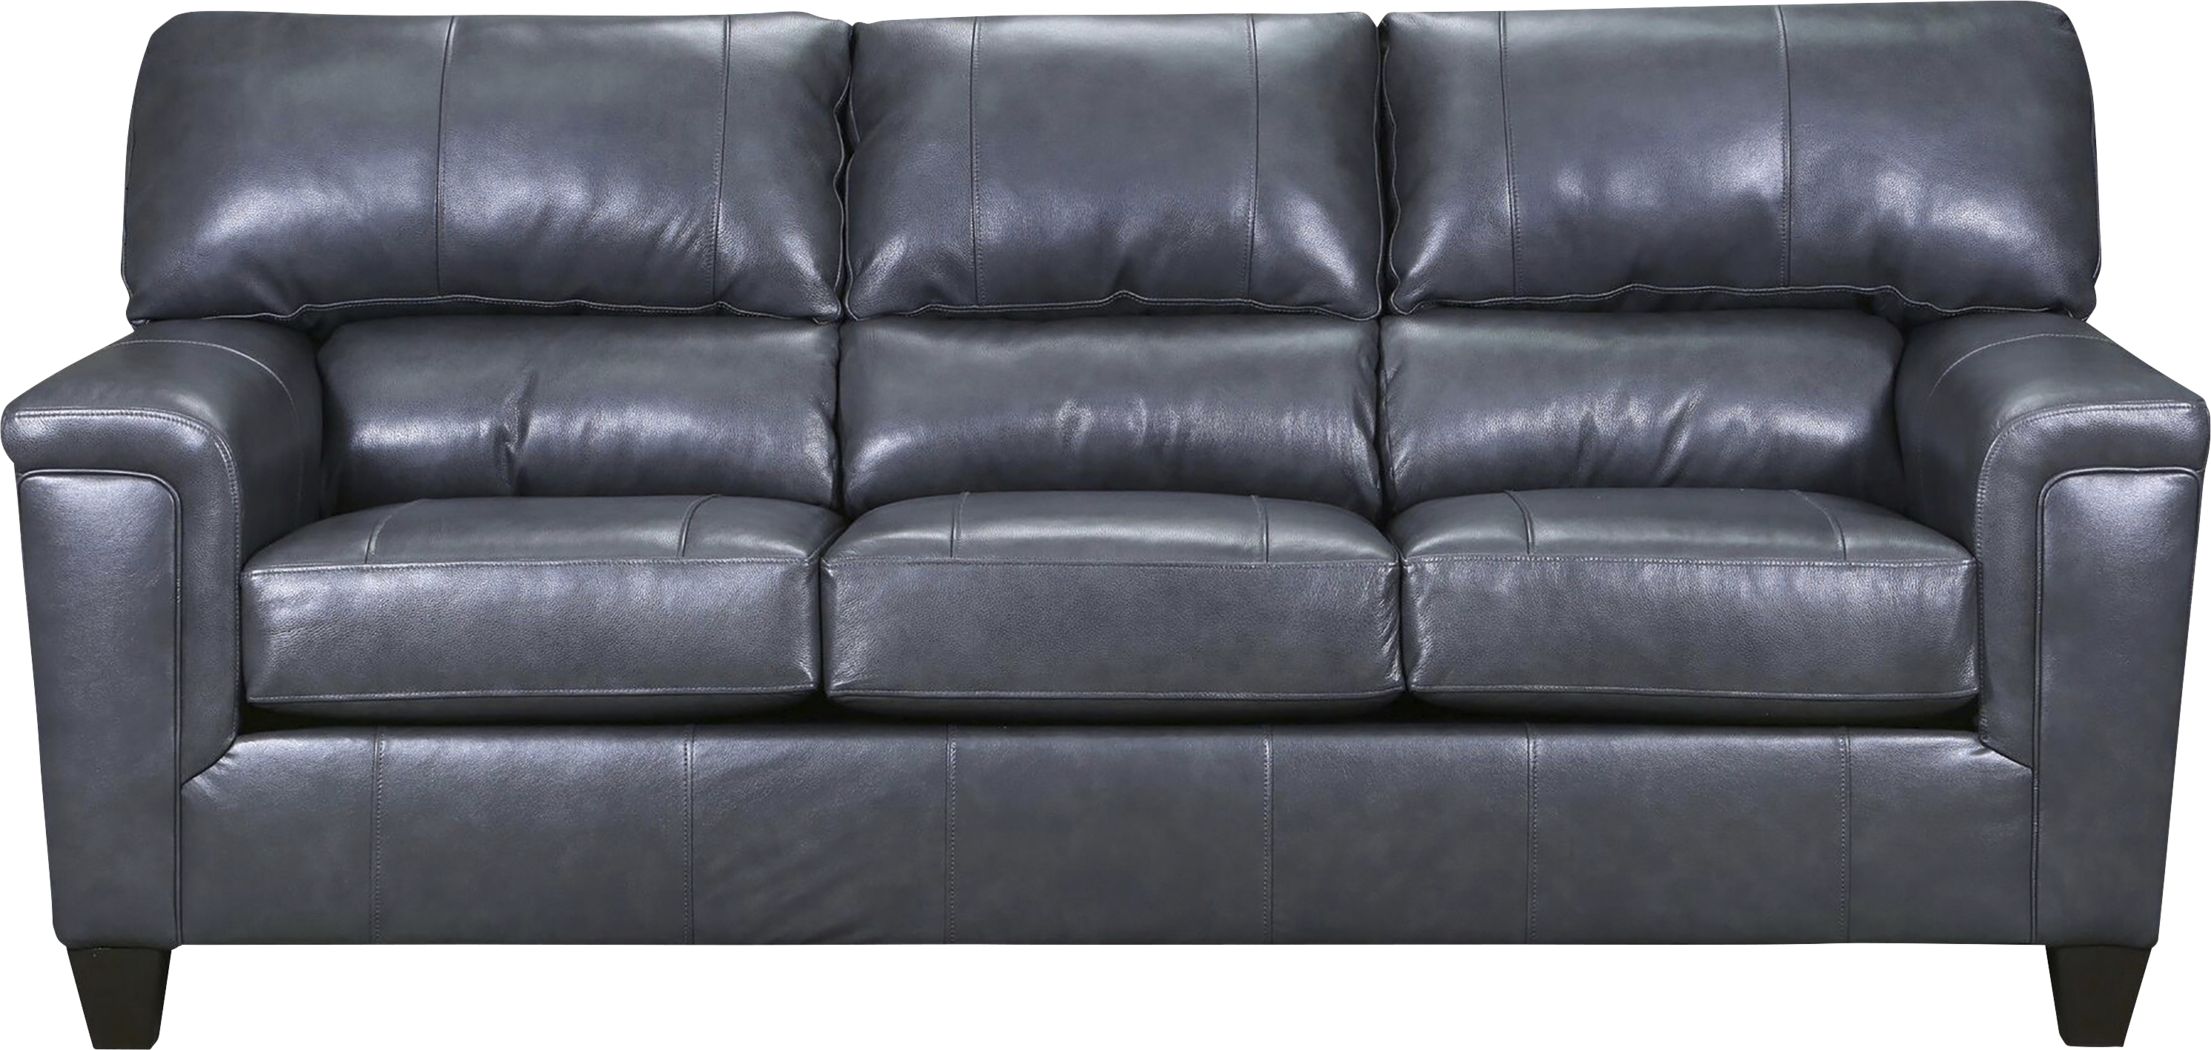 Leather Living Room Furniture, Leather Sofa Orlando Fl